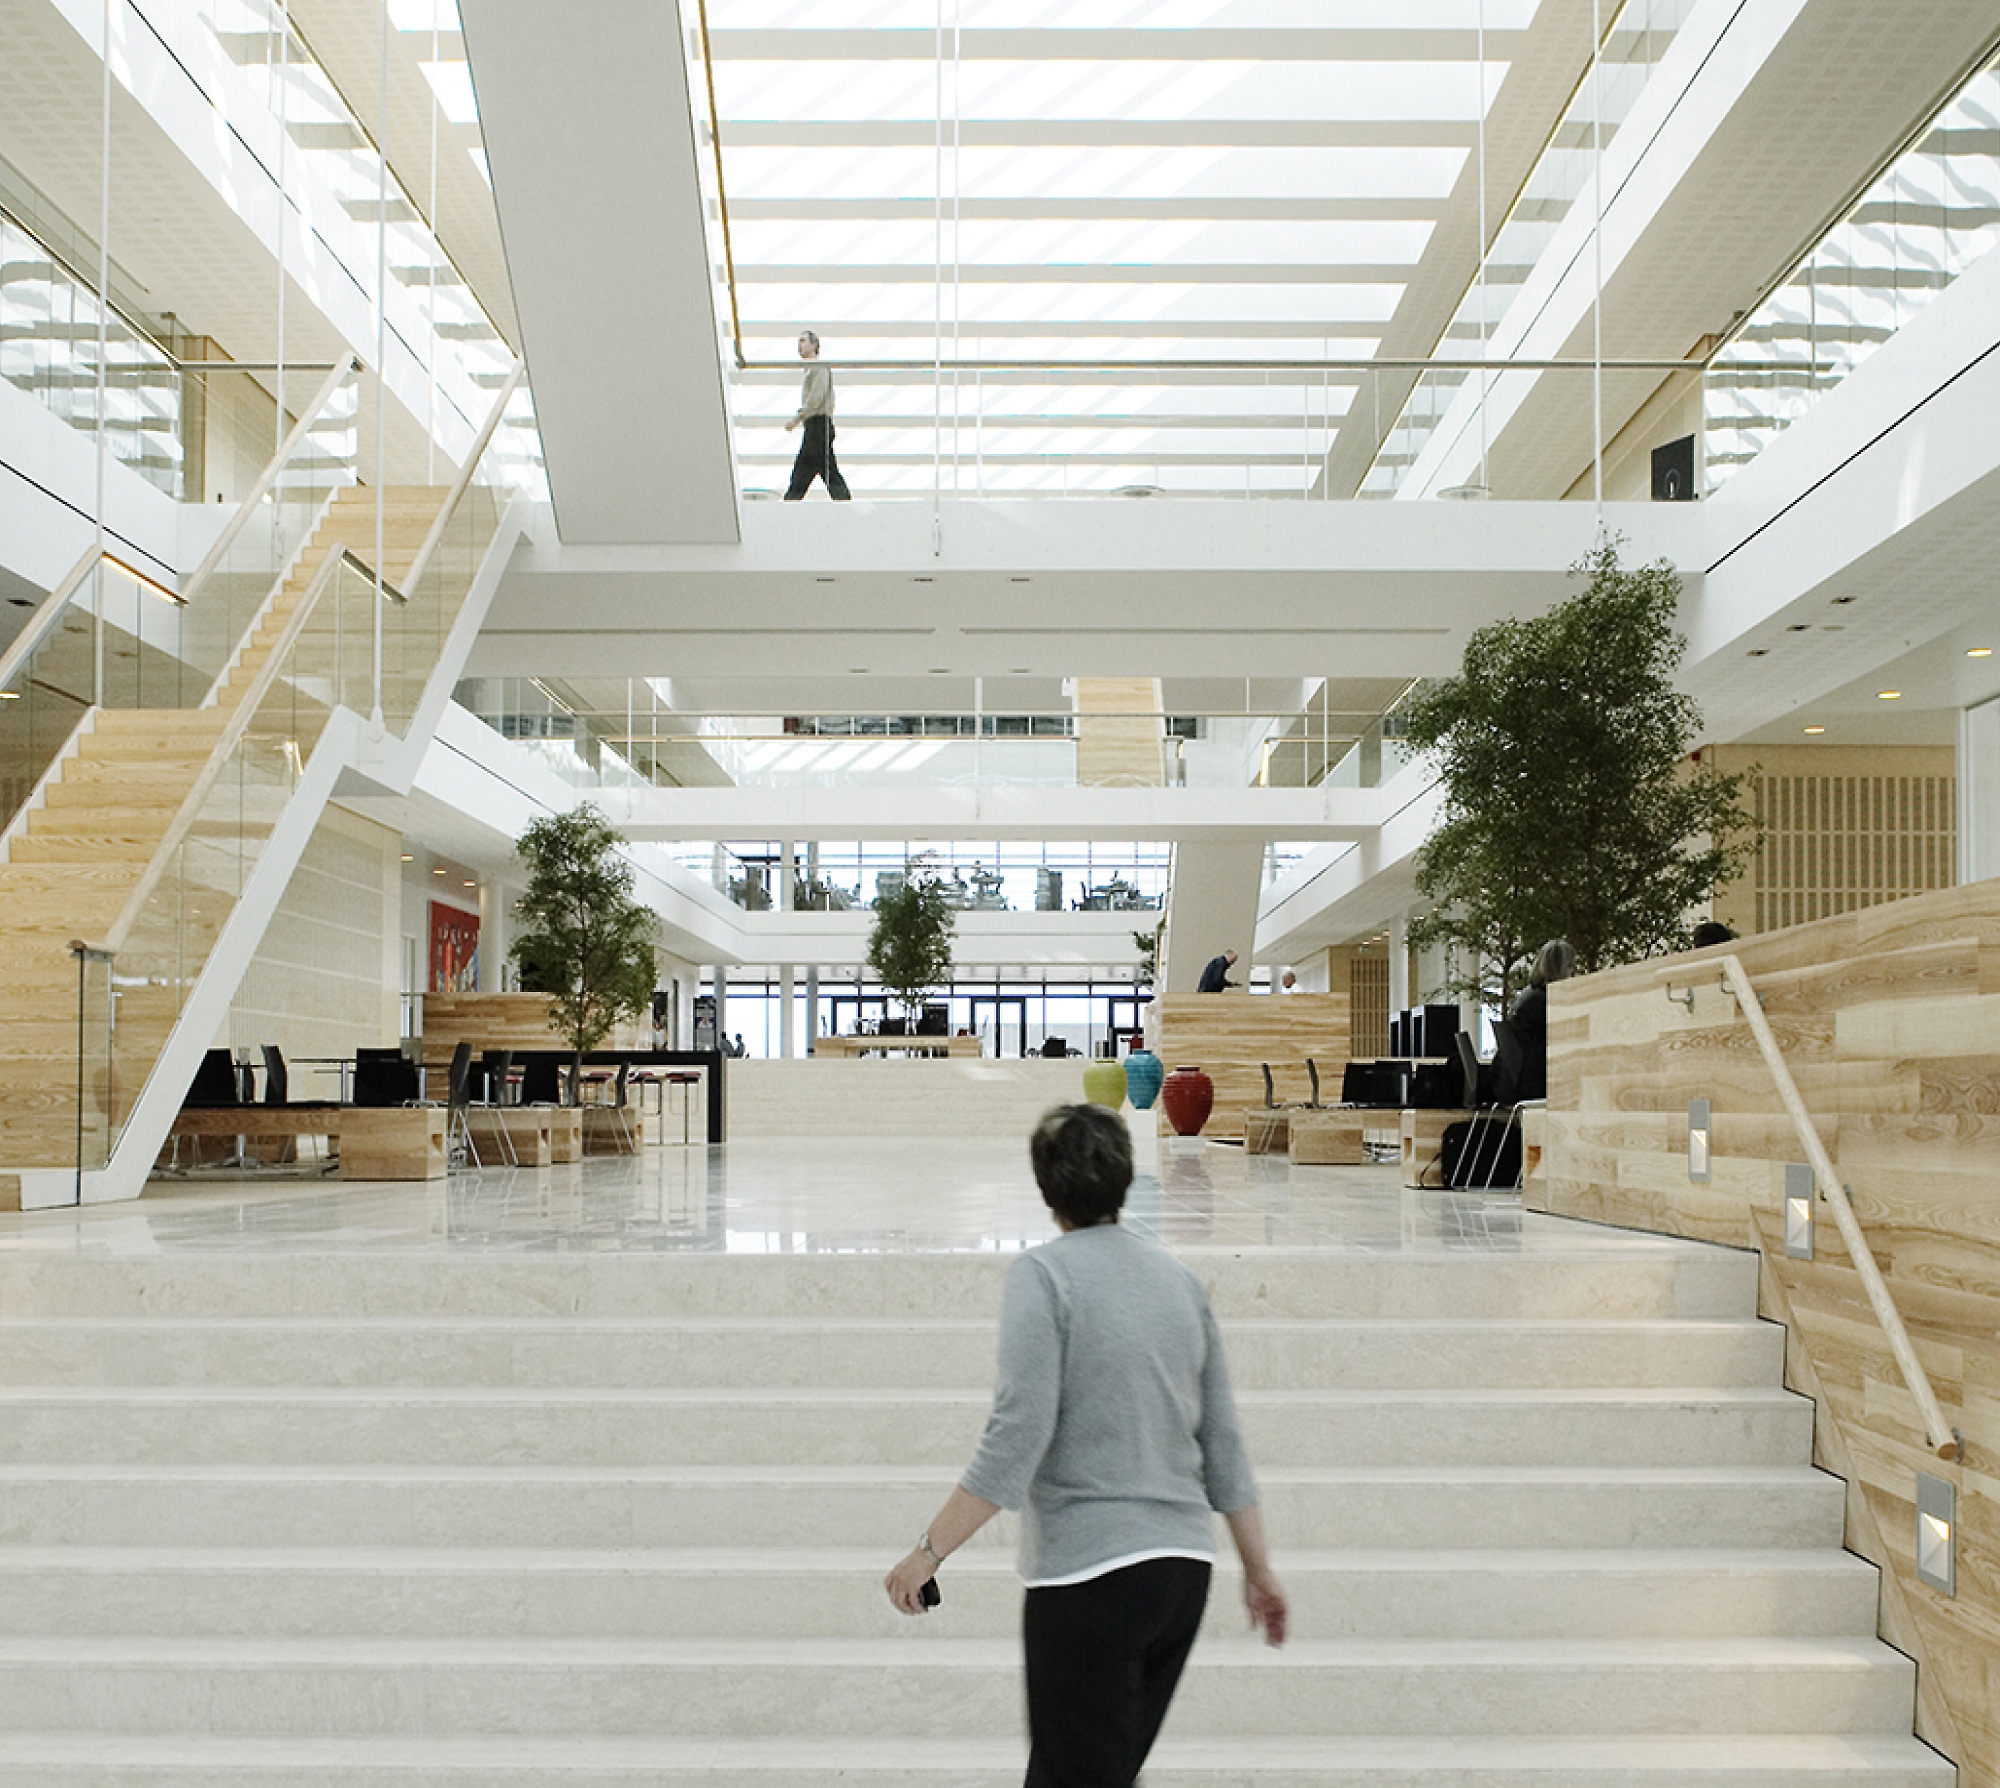 Moderner Bürobereich mit großen weißen Treppen, Holzakzenten und Personen, die in einer hellen und luftigen Atmosphäre herumlaufen.